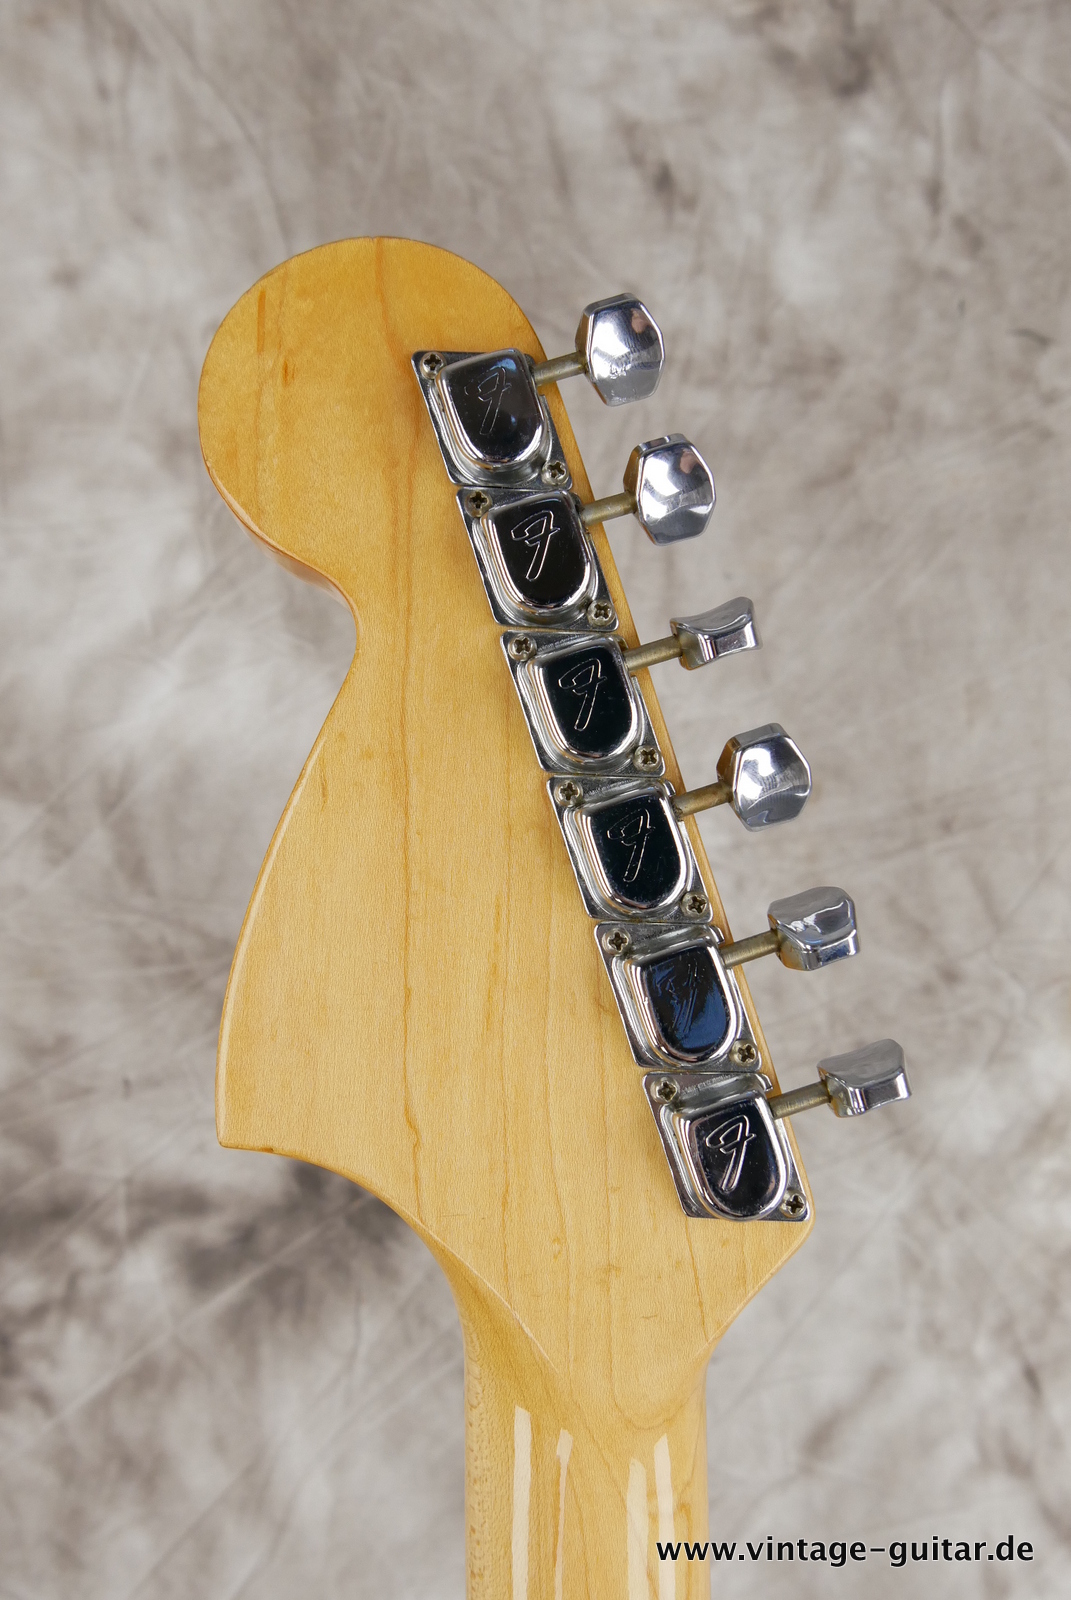 Fender-Stratocaster-1971-sunburst-4-hole-010.JPG